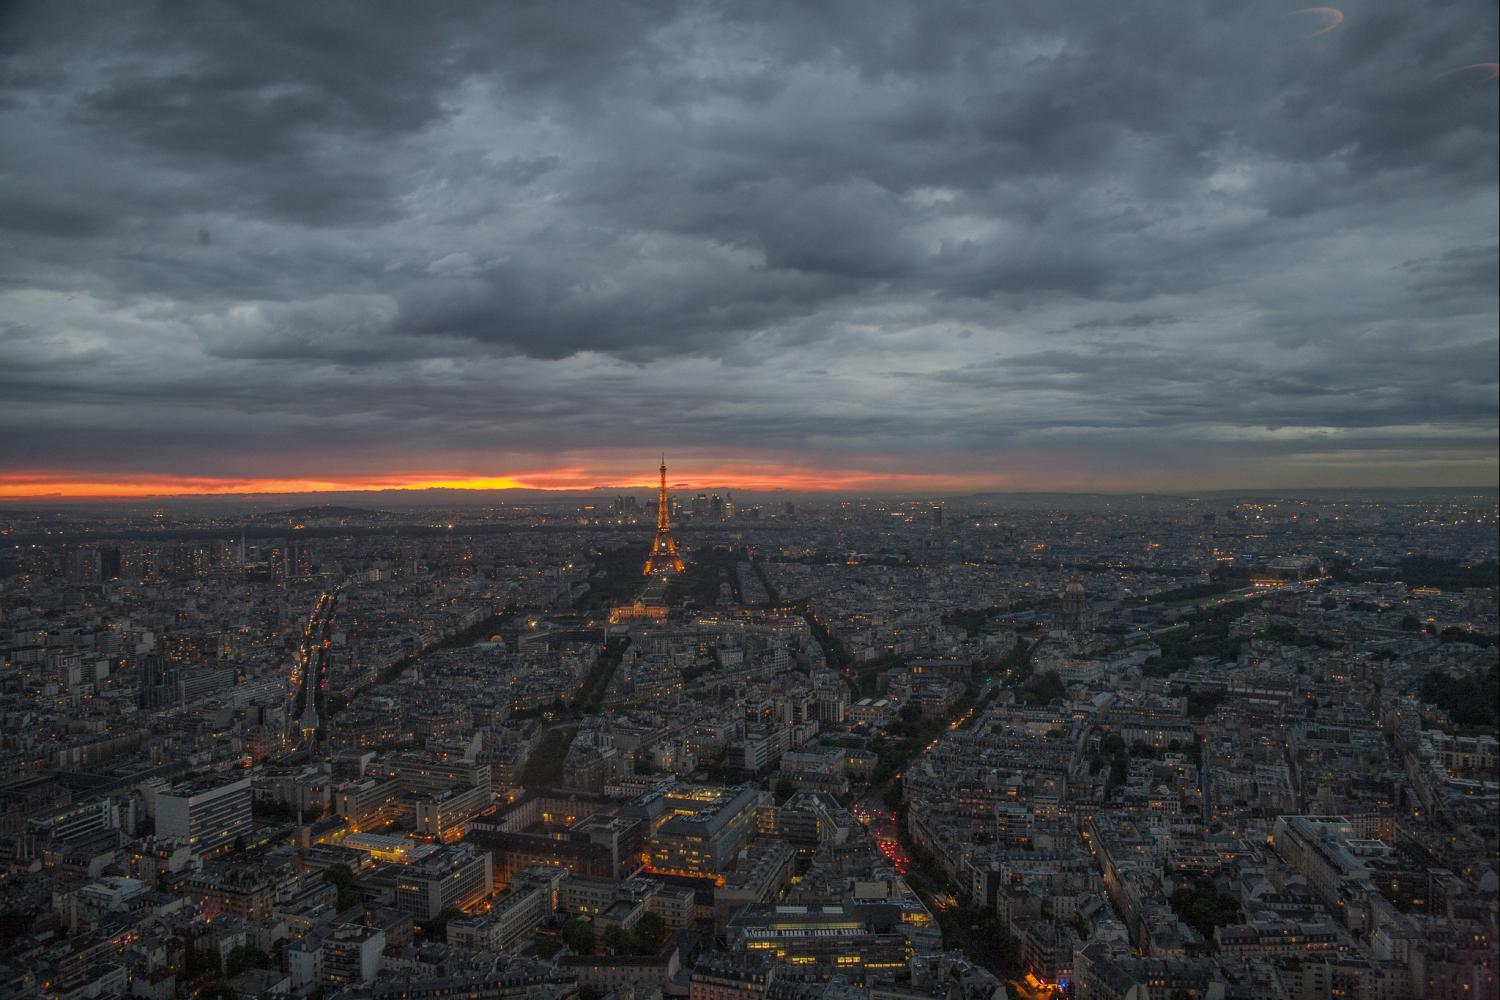 Paris COP21